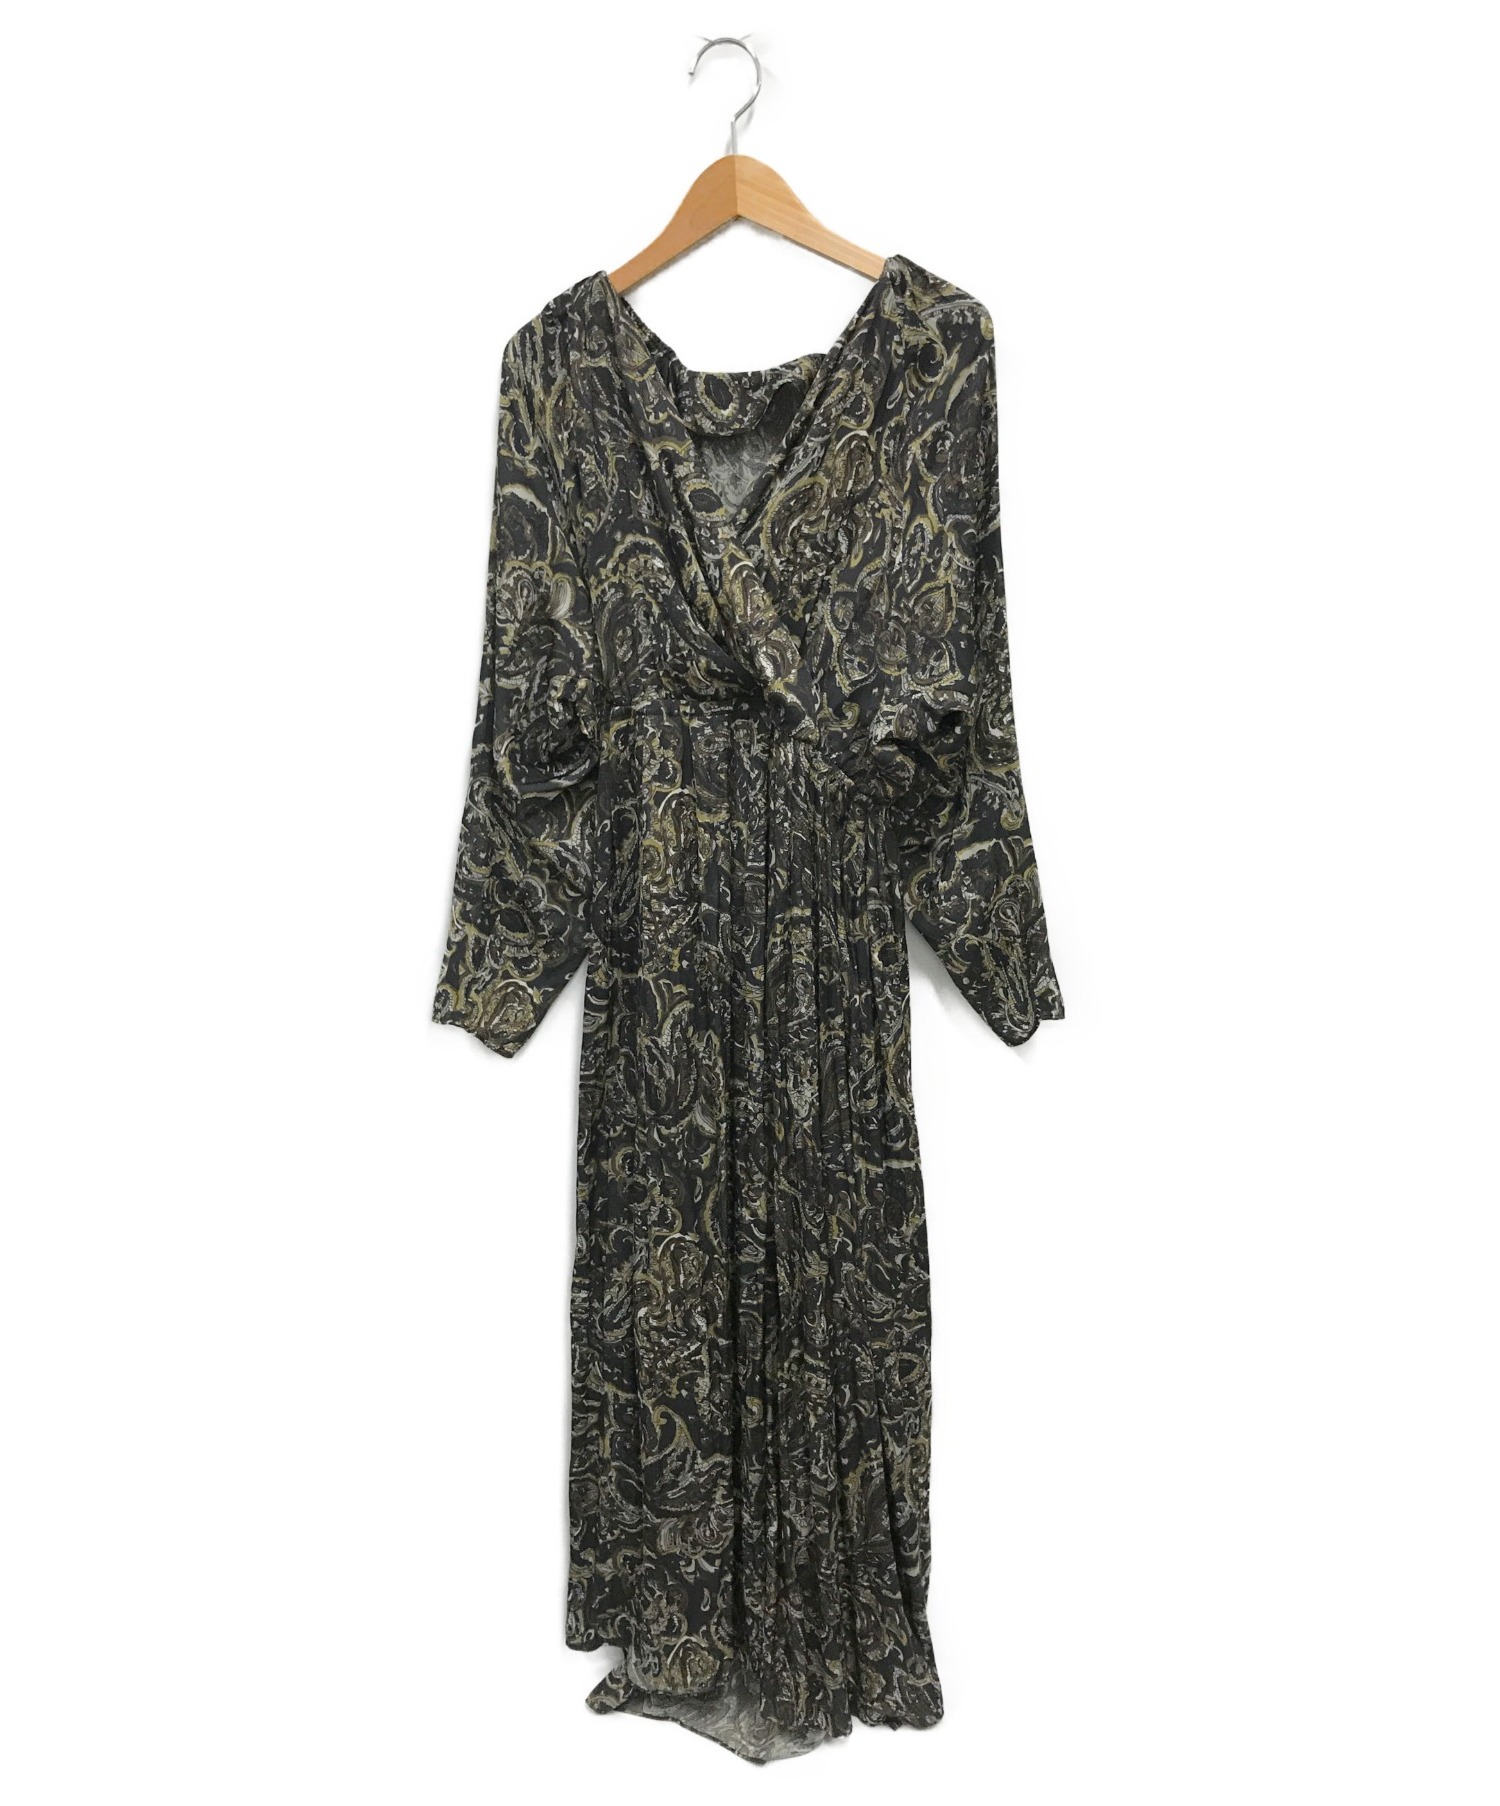 ロングワンピース/マキシワンピース2230 plume paisley dress ...